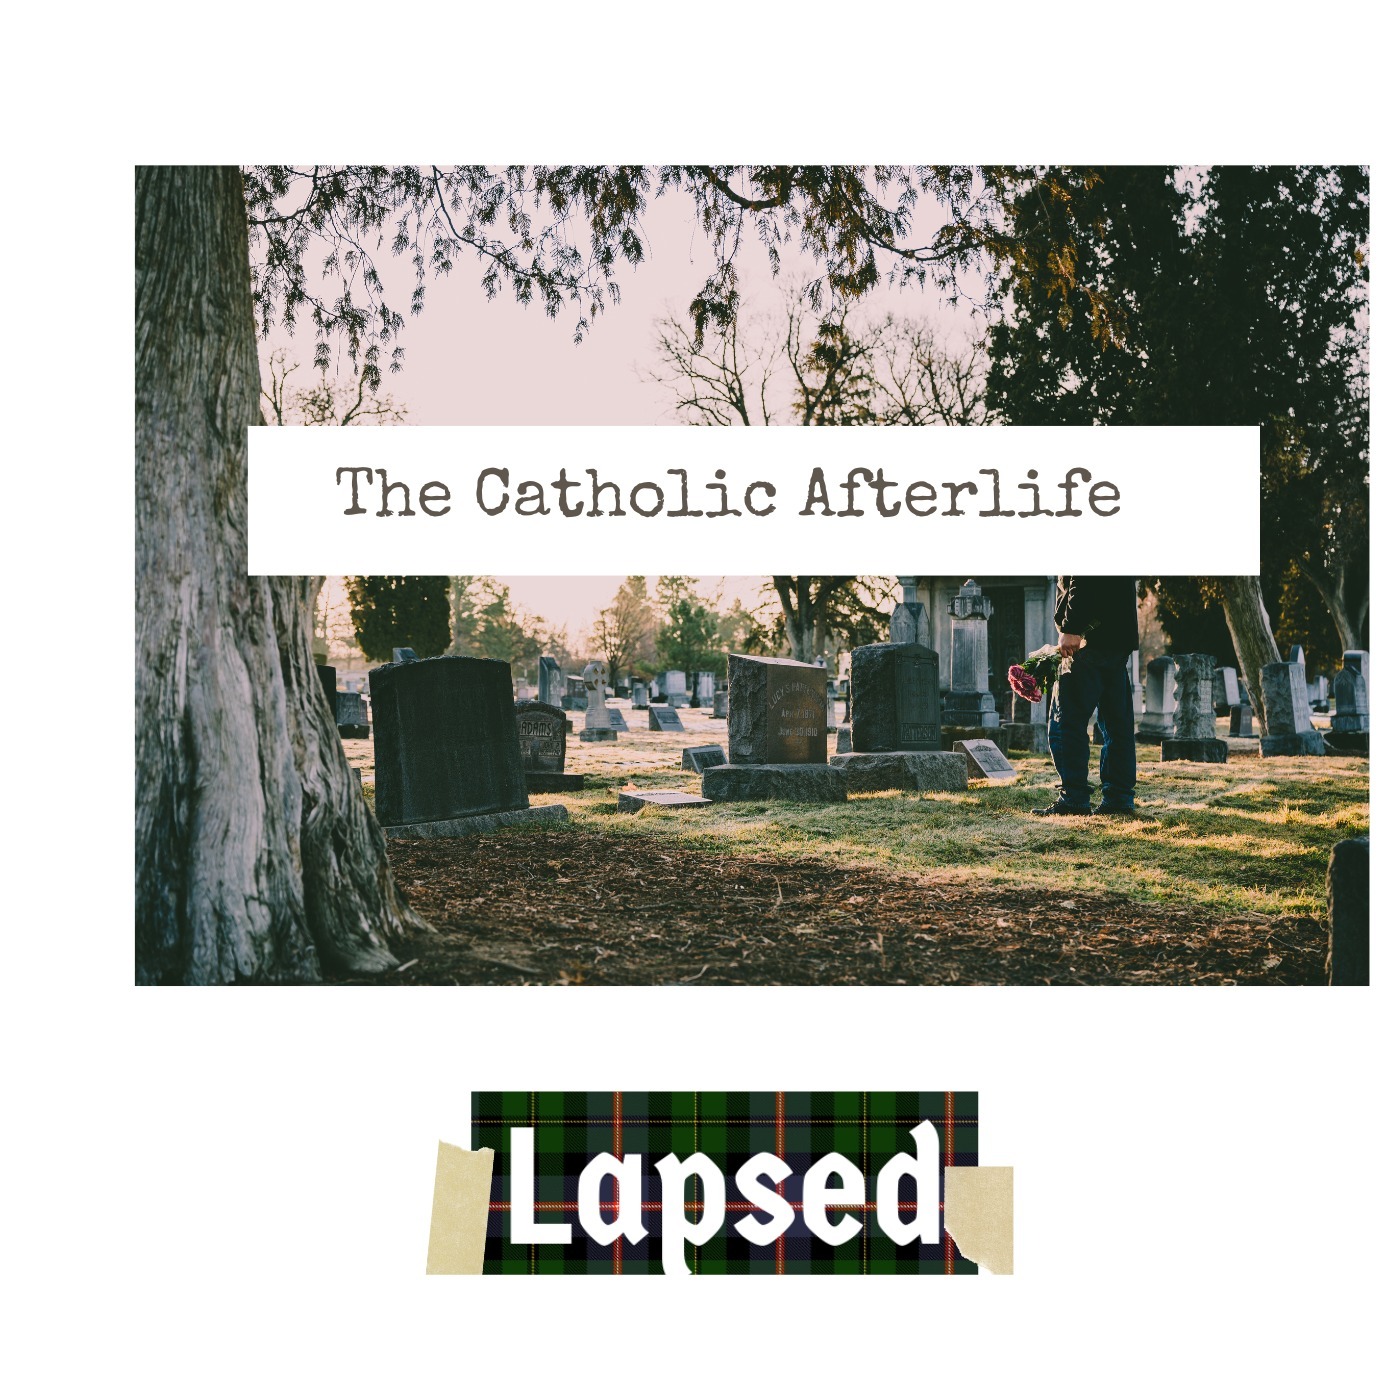 The Catholic Afterlife